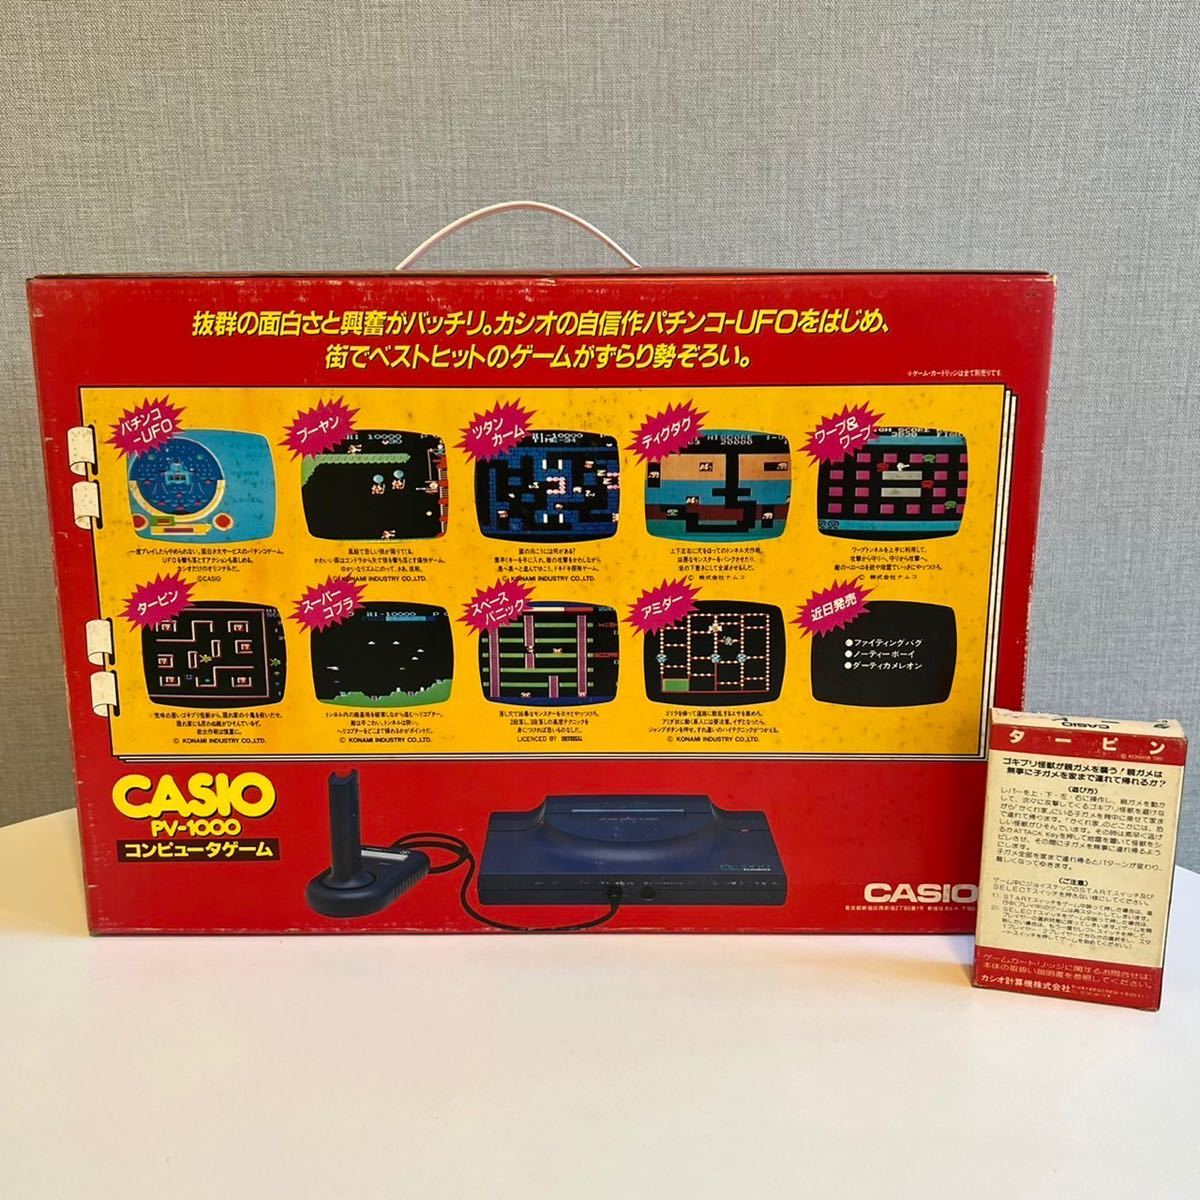 CASIO PV-1000 コンピュータゲーム カシオ レトロゲーム ソフト1本